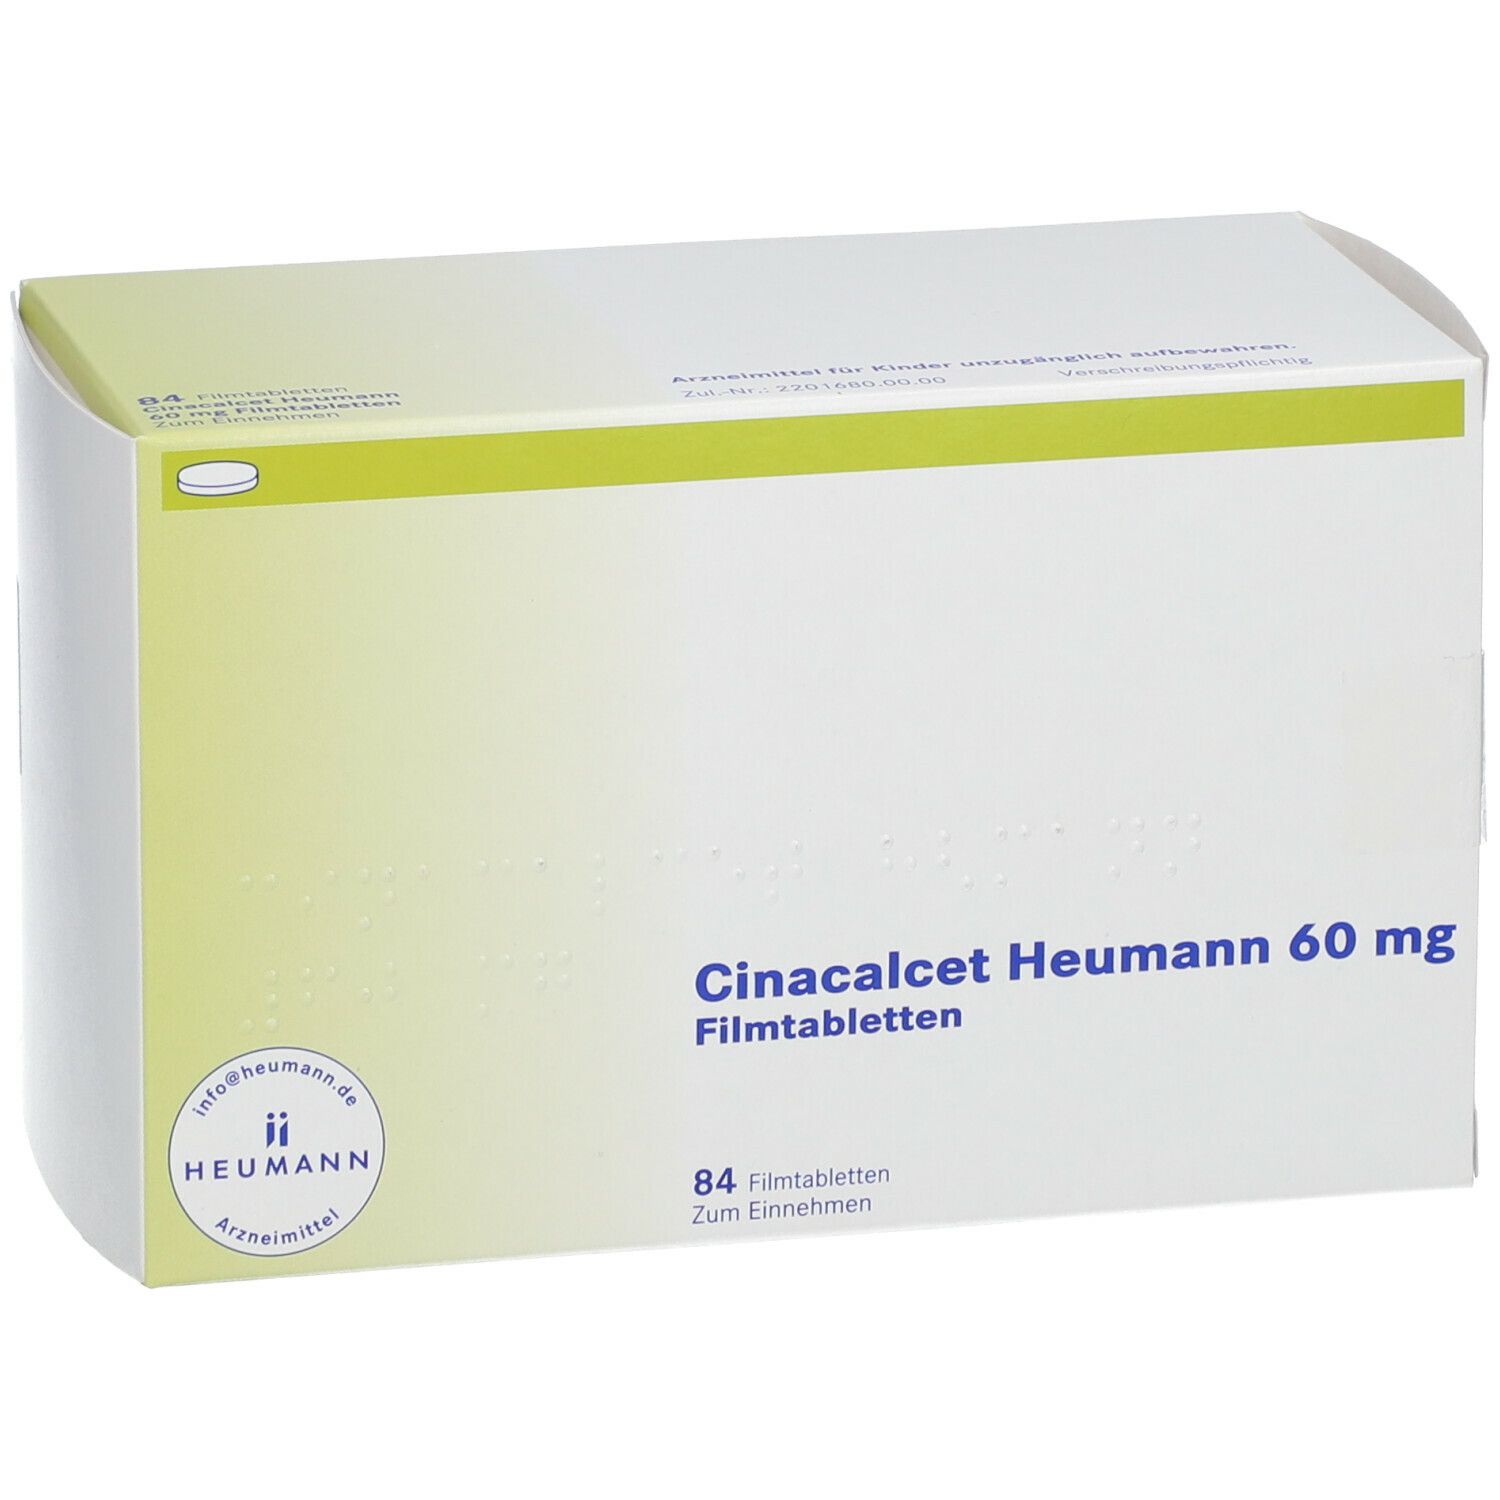 Cinacalcet Heumann 60 mg